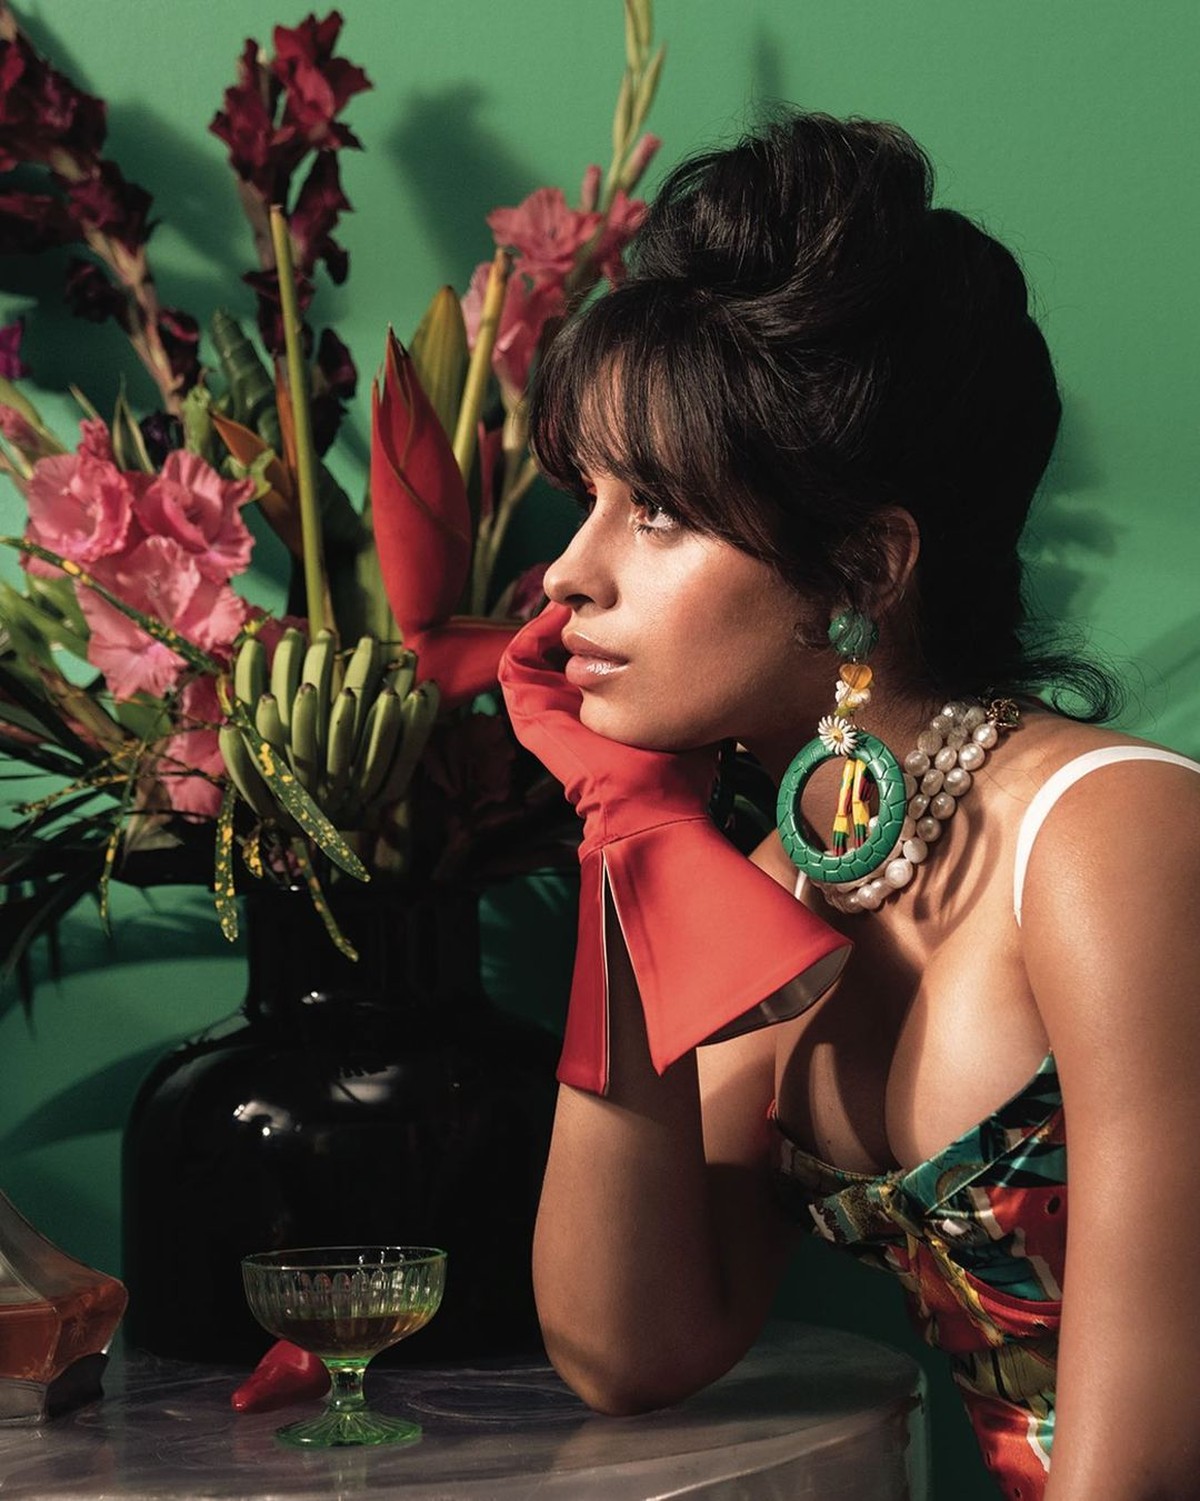 Camila Cabello fala do novo álbum ‘Familia’, o 3º da carreira: ‘Estou sendo fiel a mim mesma’ |  Música